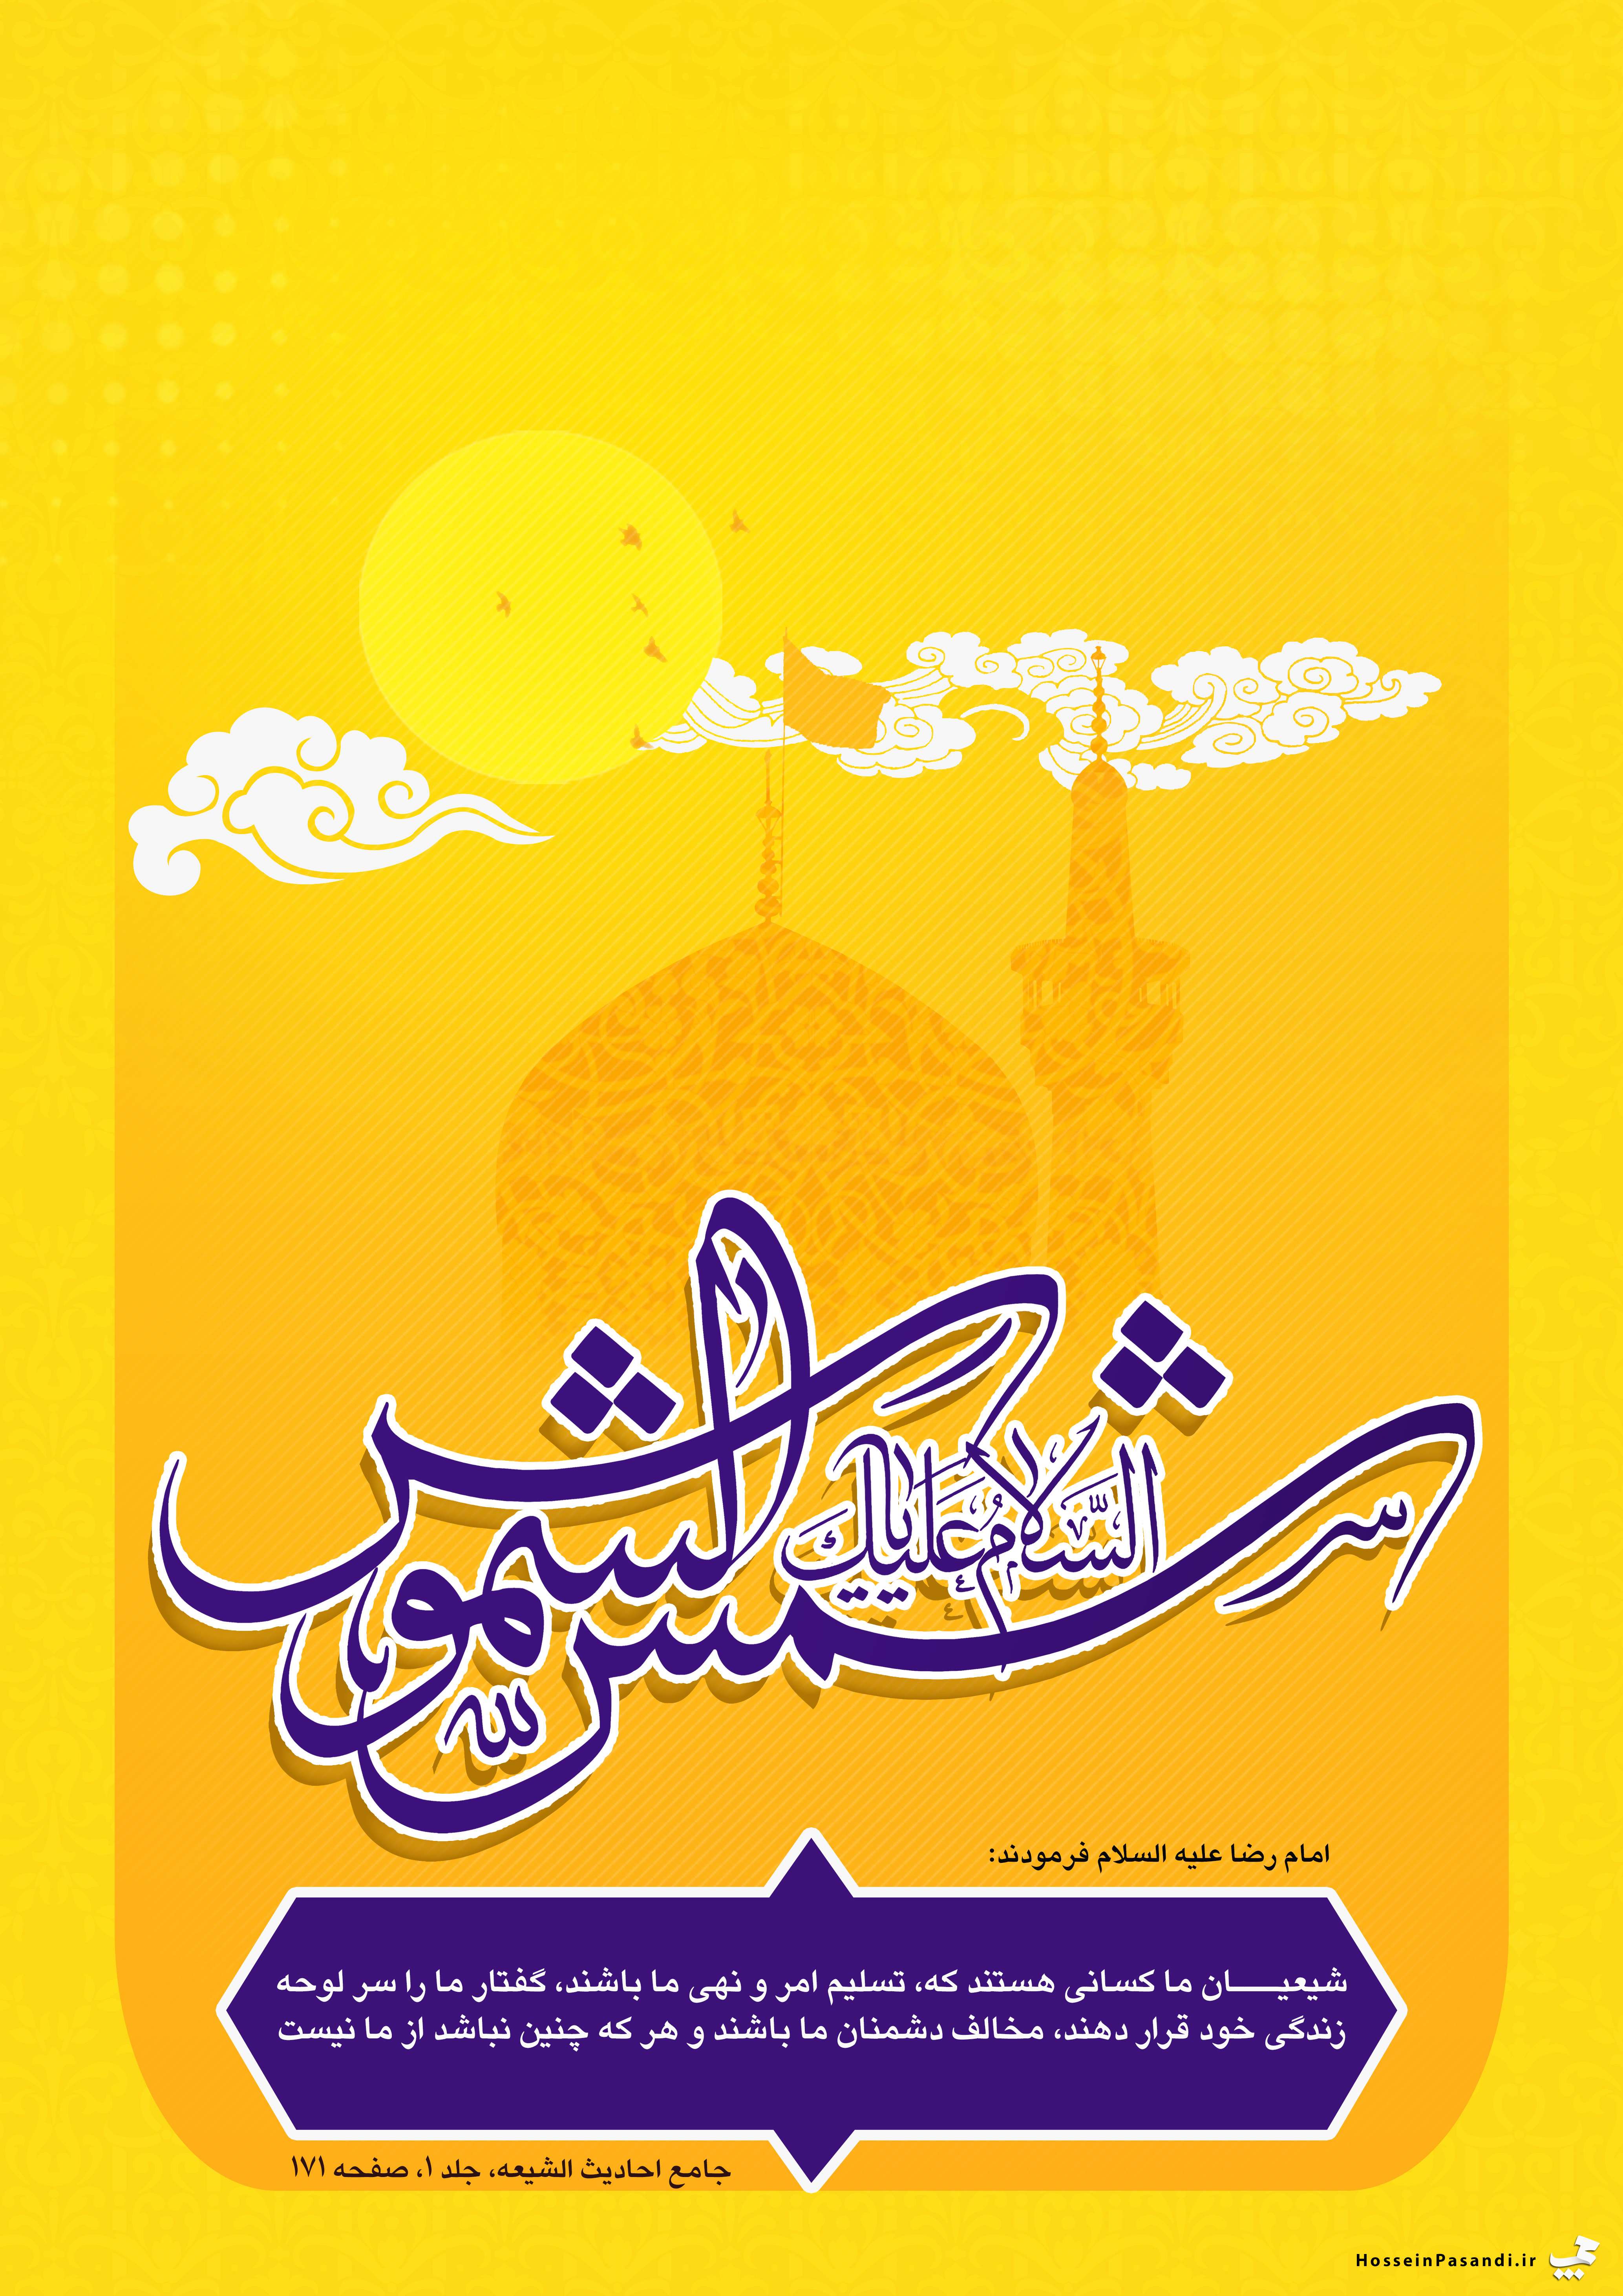 Rəuf imam (Poster)